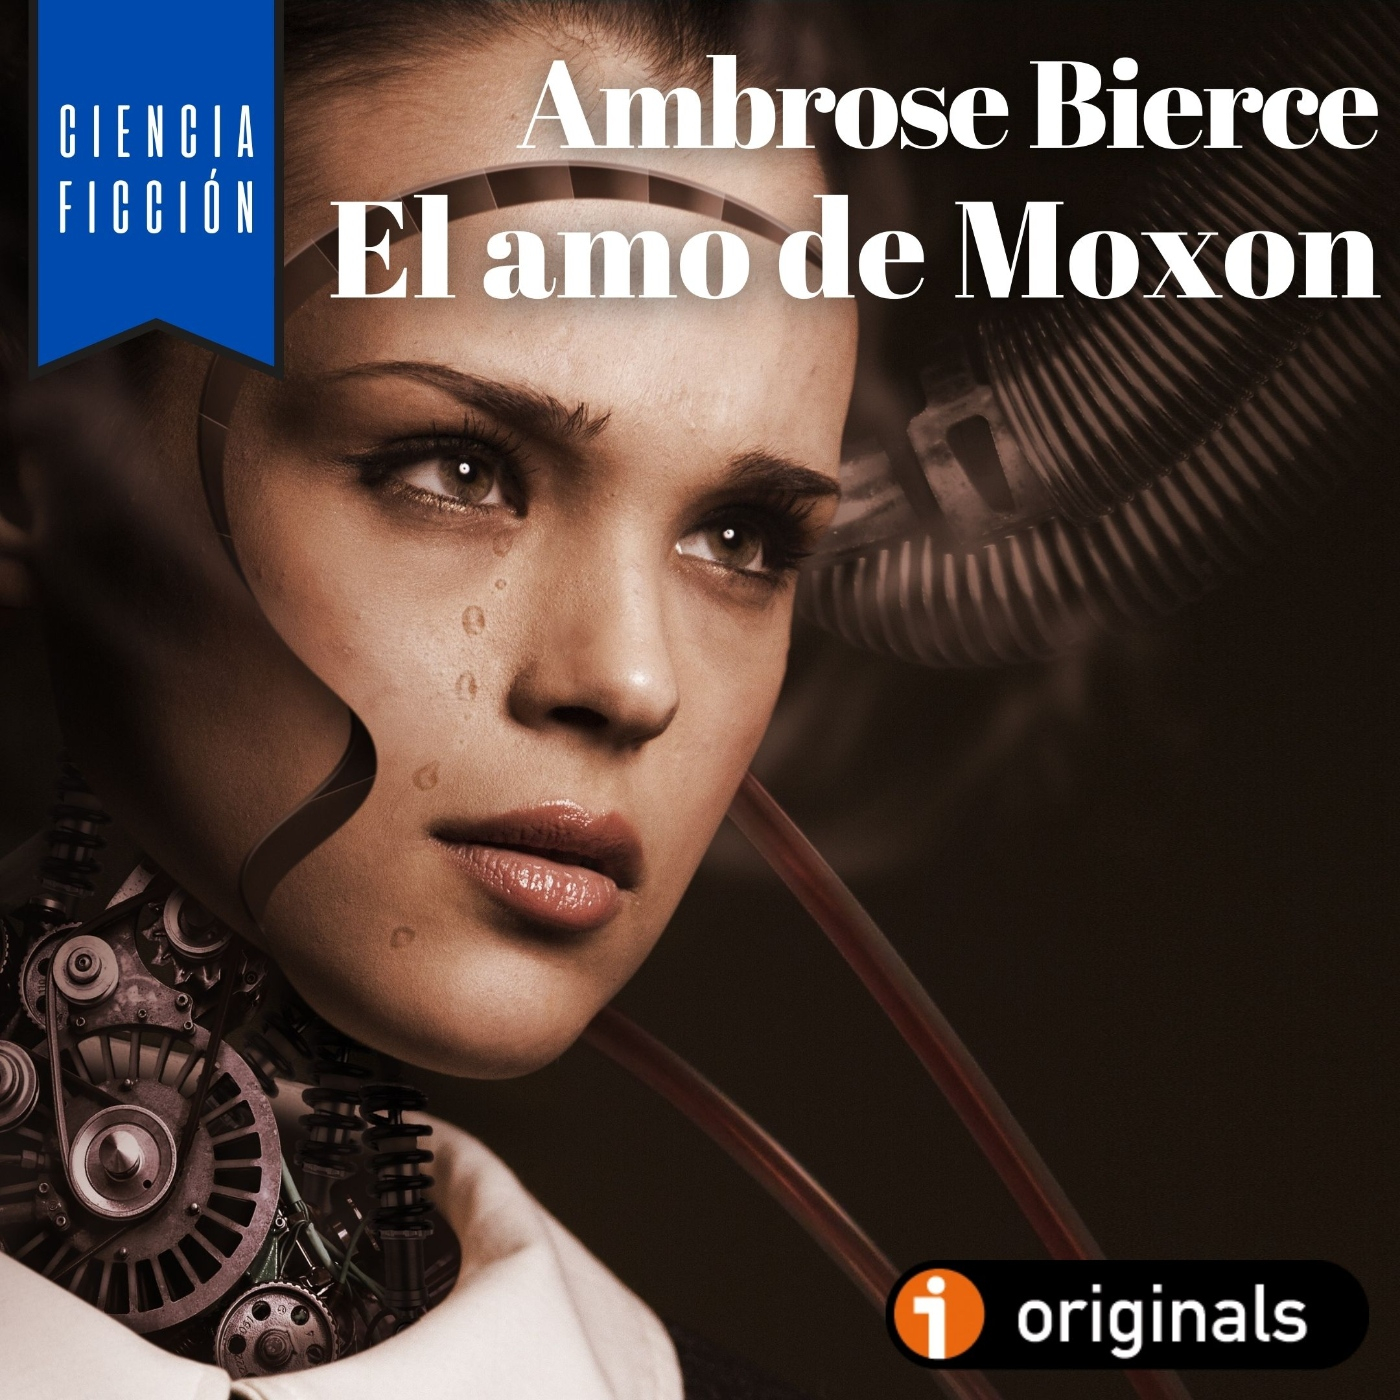 El amo de Moxon, de Ambrose Bierce - Episodio exclusivo para mecenas